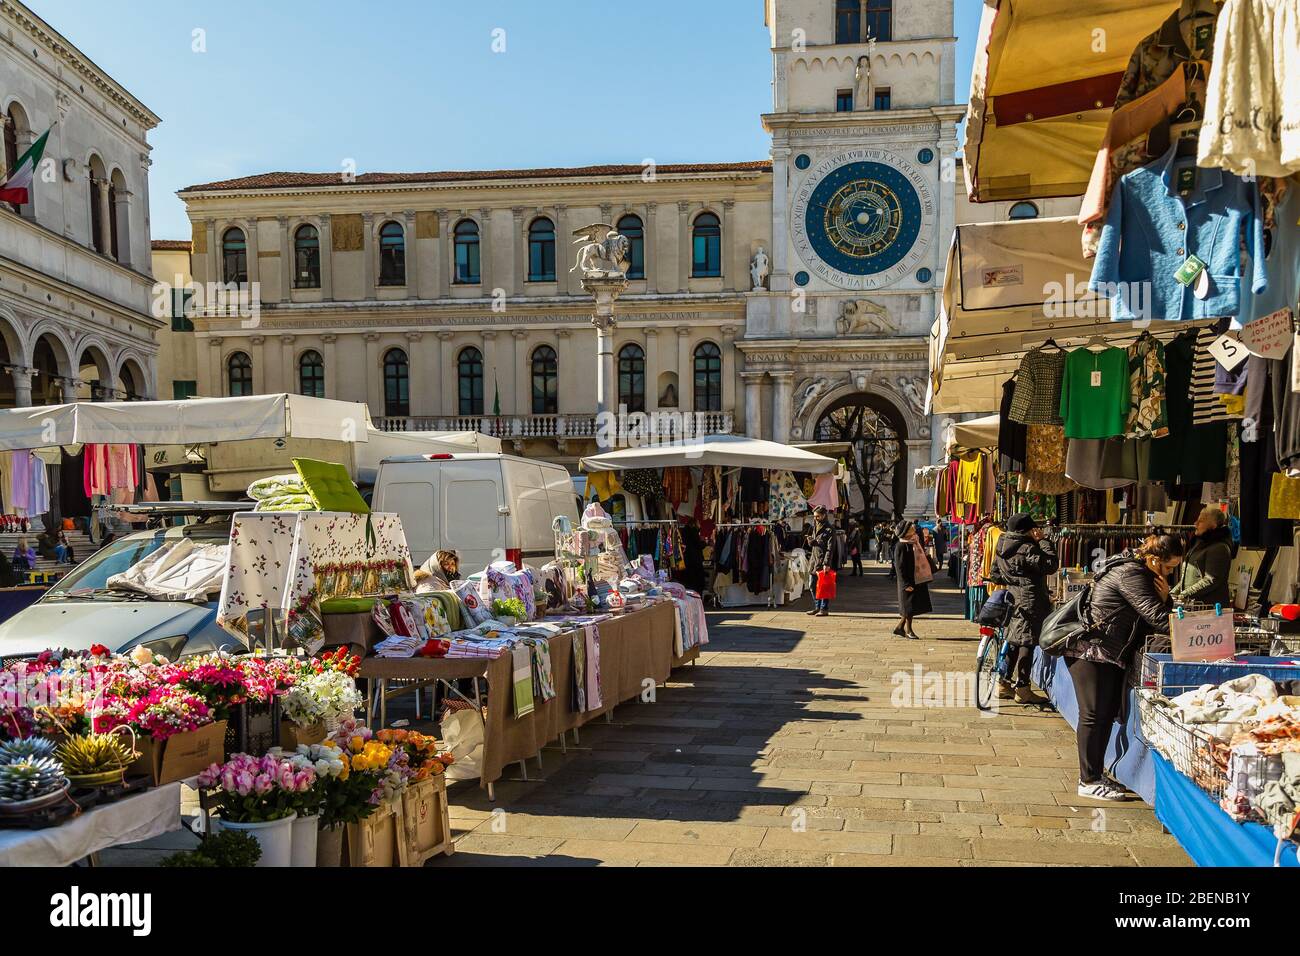 PADOVA, ITALIEN - 23. FEBRUAR 2019: Menschen, die in typischen Markt auf der Piazza dei Signori einkaufen gehen Stockfoto